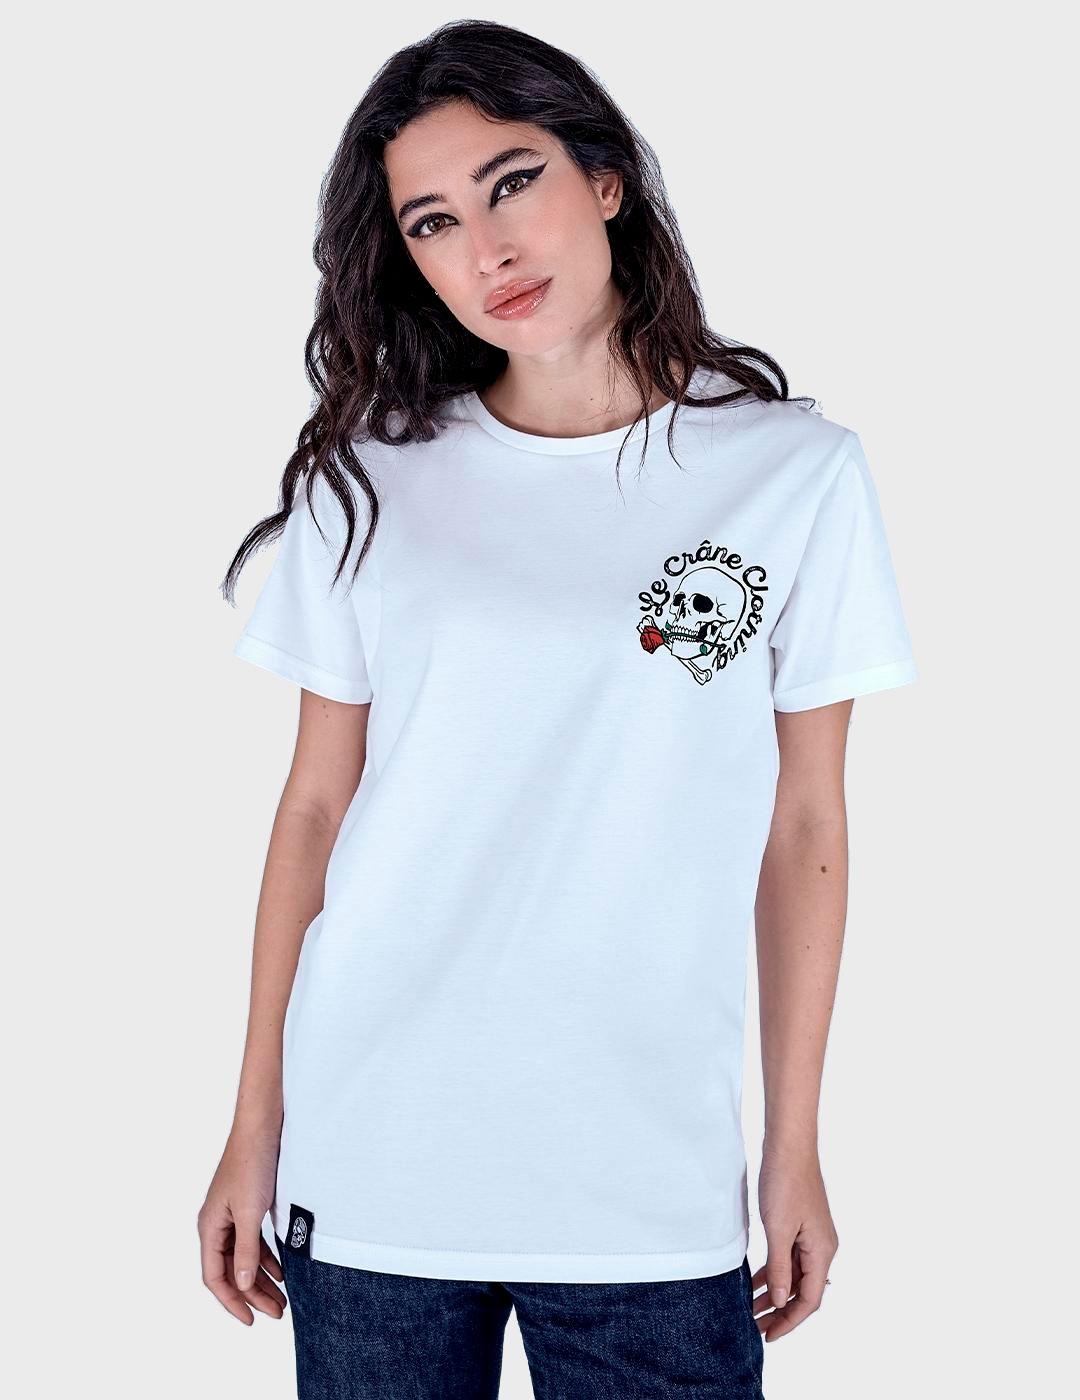 Camiseta Le Crane Skull and Roses blanca unisex